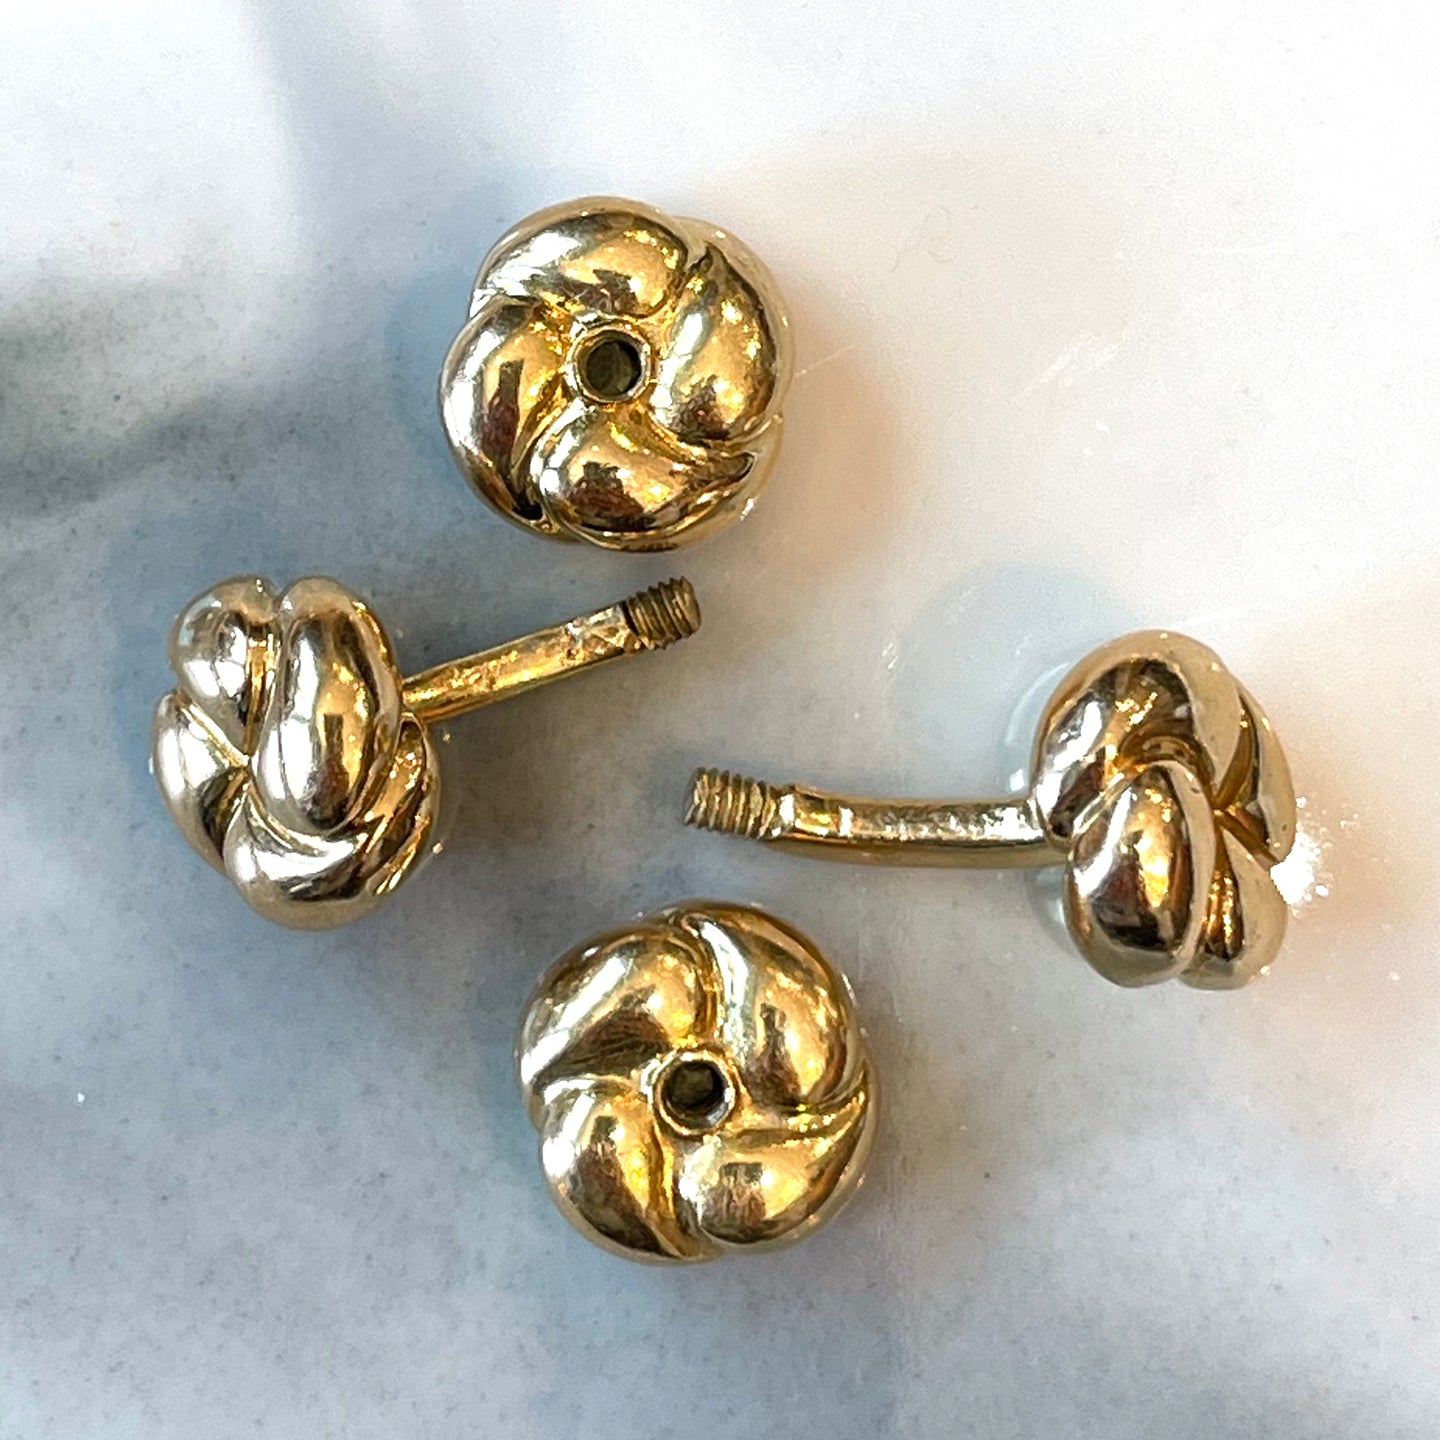 Antique French Round Button Cufflinks 18k Gold